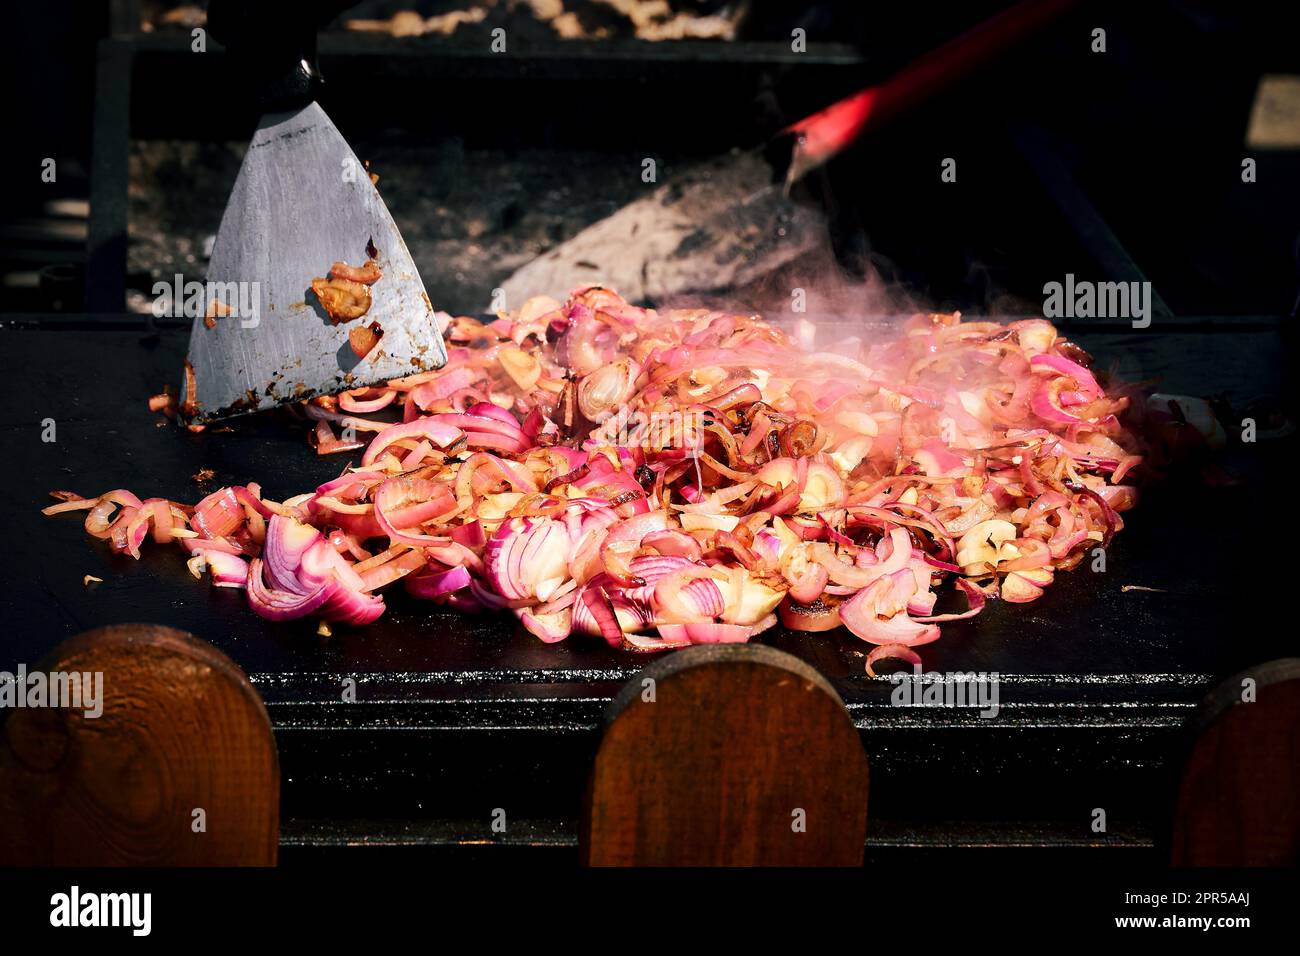 Gegrillte rote Zwiebelscheiben verleihen jedem Grillgericht einen Hauch süßen und rauchigen Aromas. Stockfoto